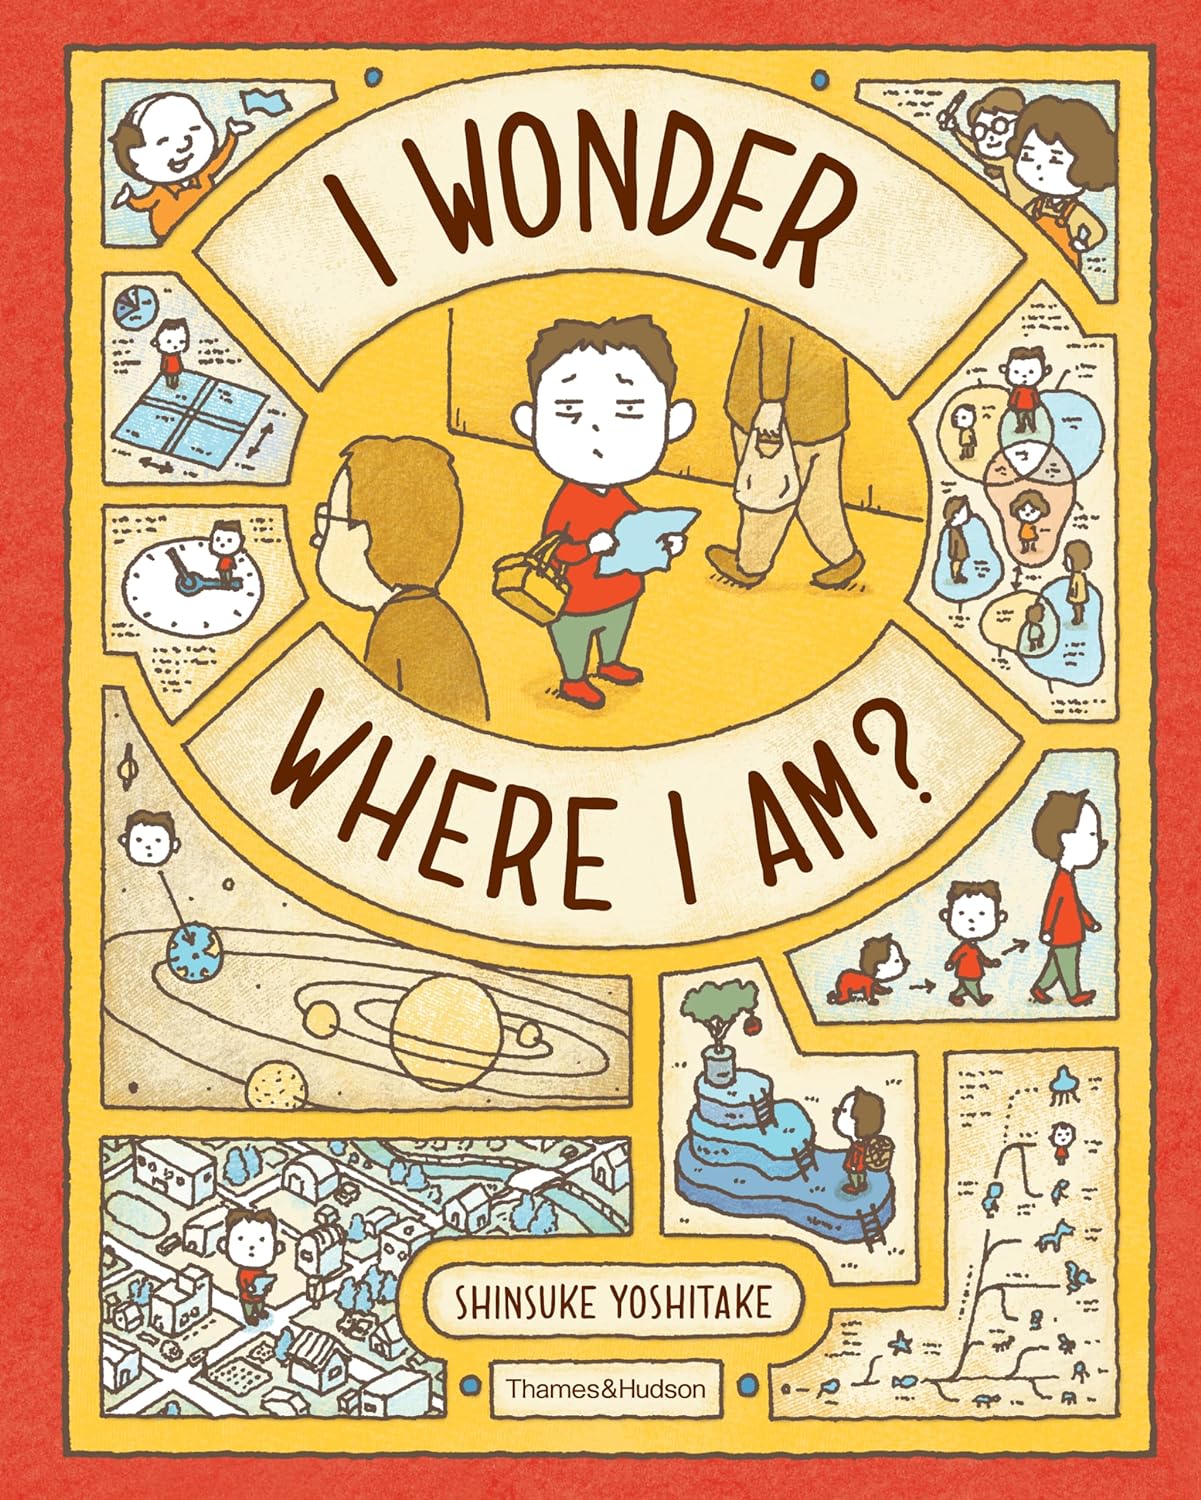 I Wonder Where I Am? by Shinsuke Yoshitake